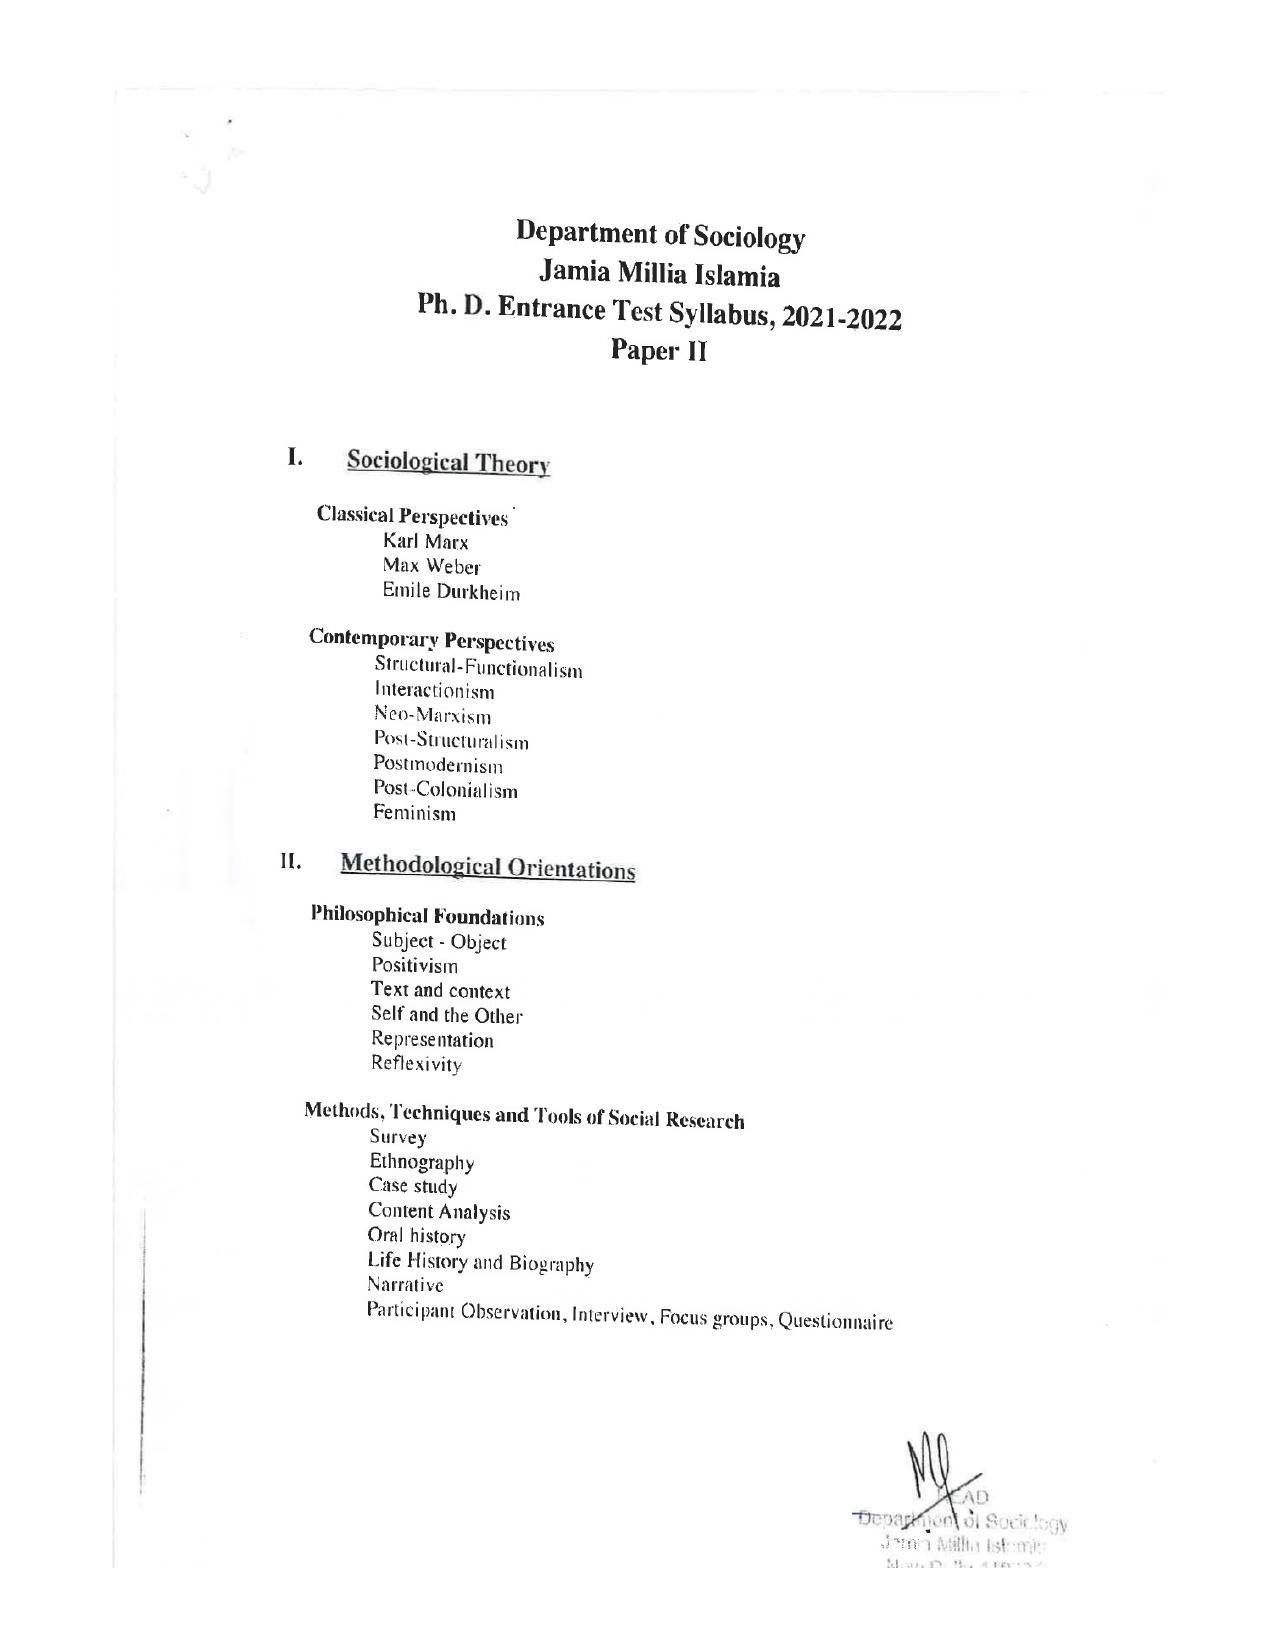 JMI Entrance Exam FACULTY OF SOCIAL SCIENCES Syllabus - Page 16